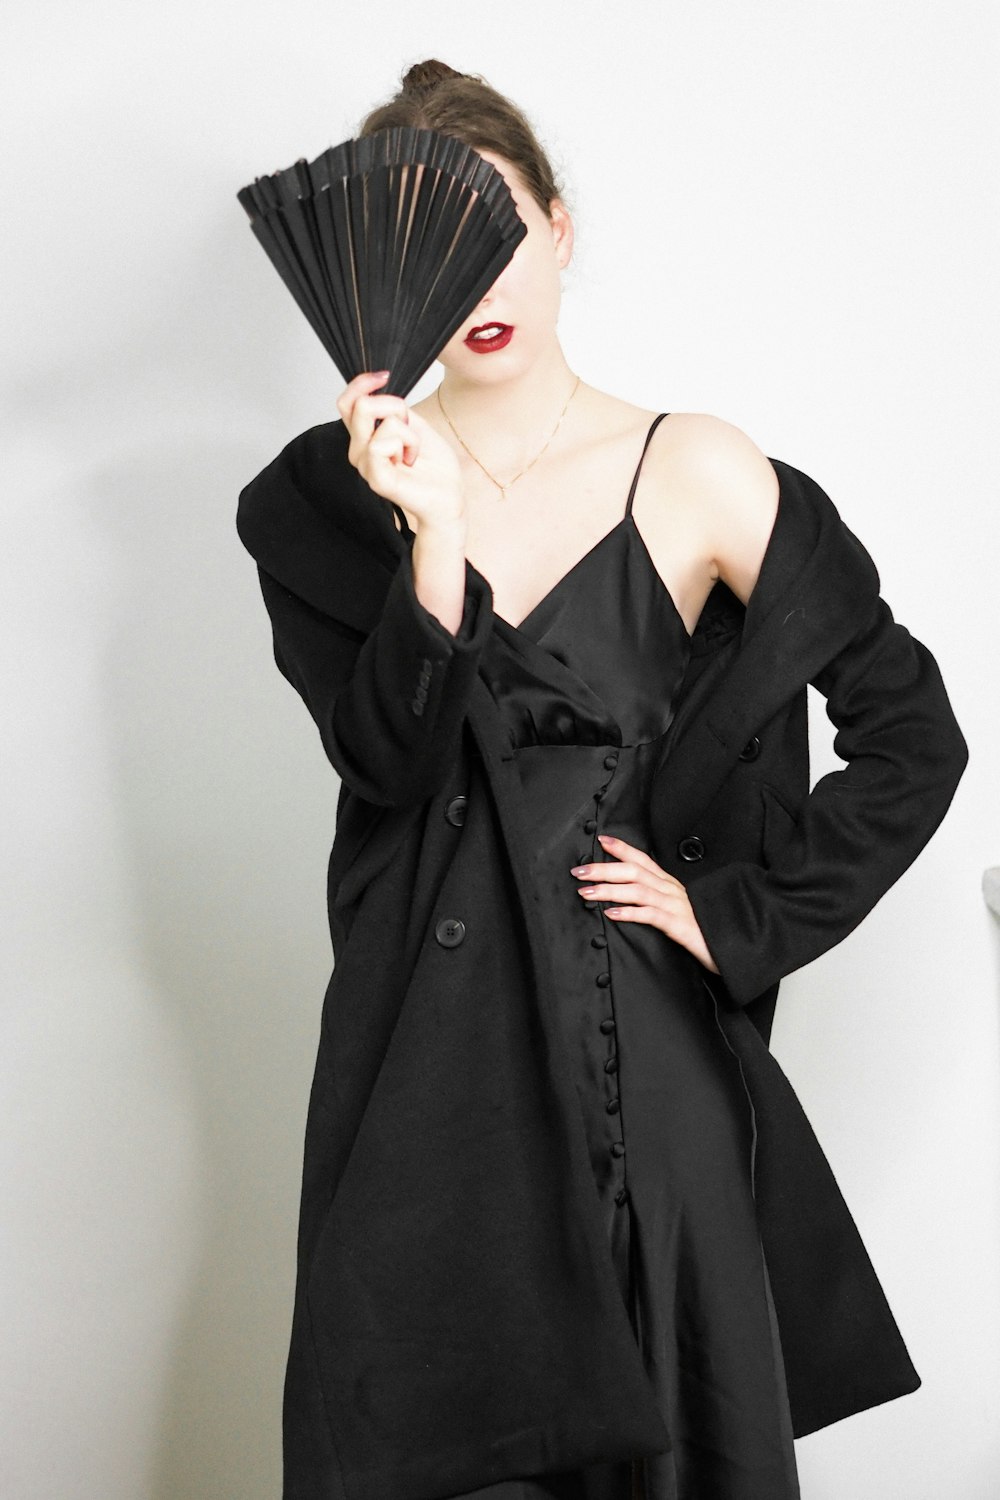 a woman in a black dress holding a fan